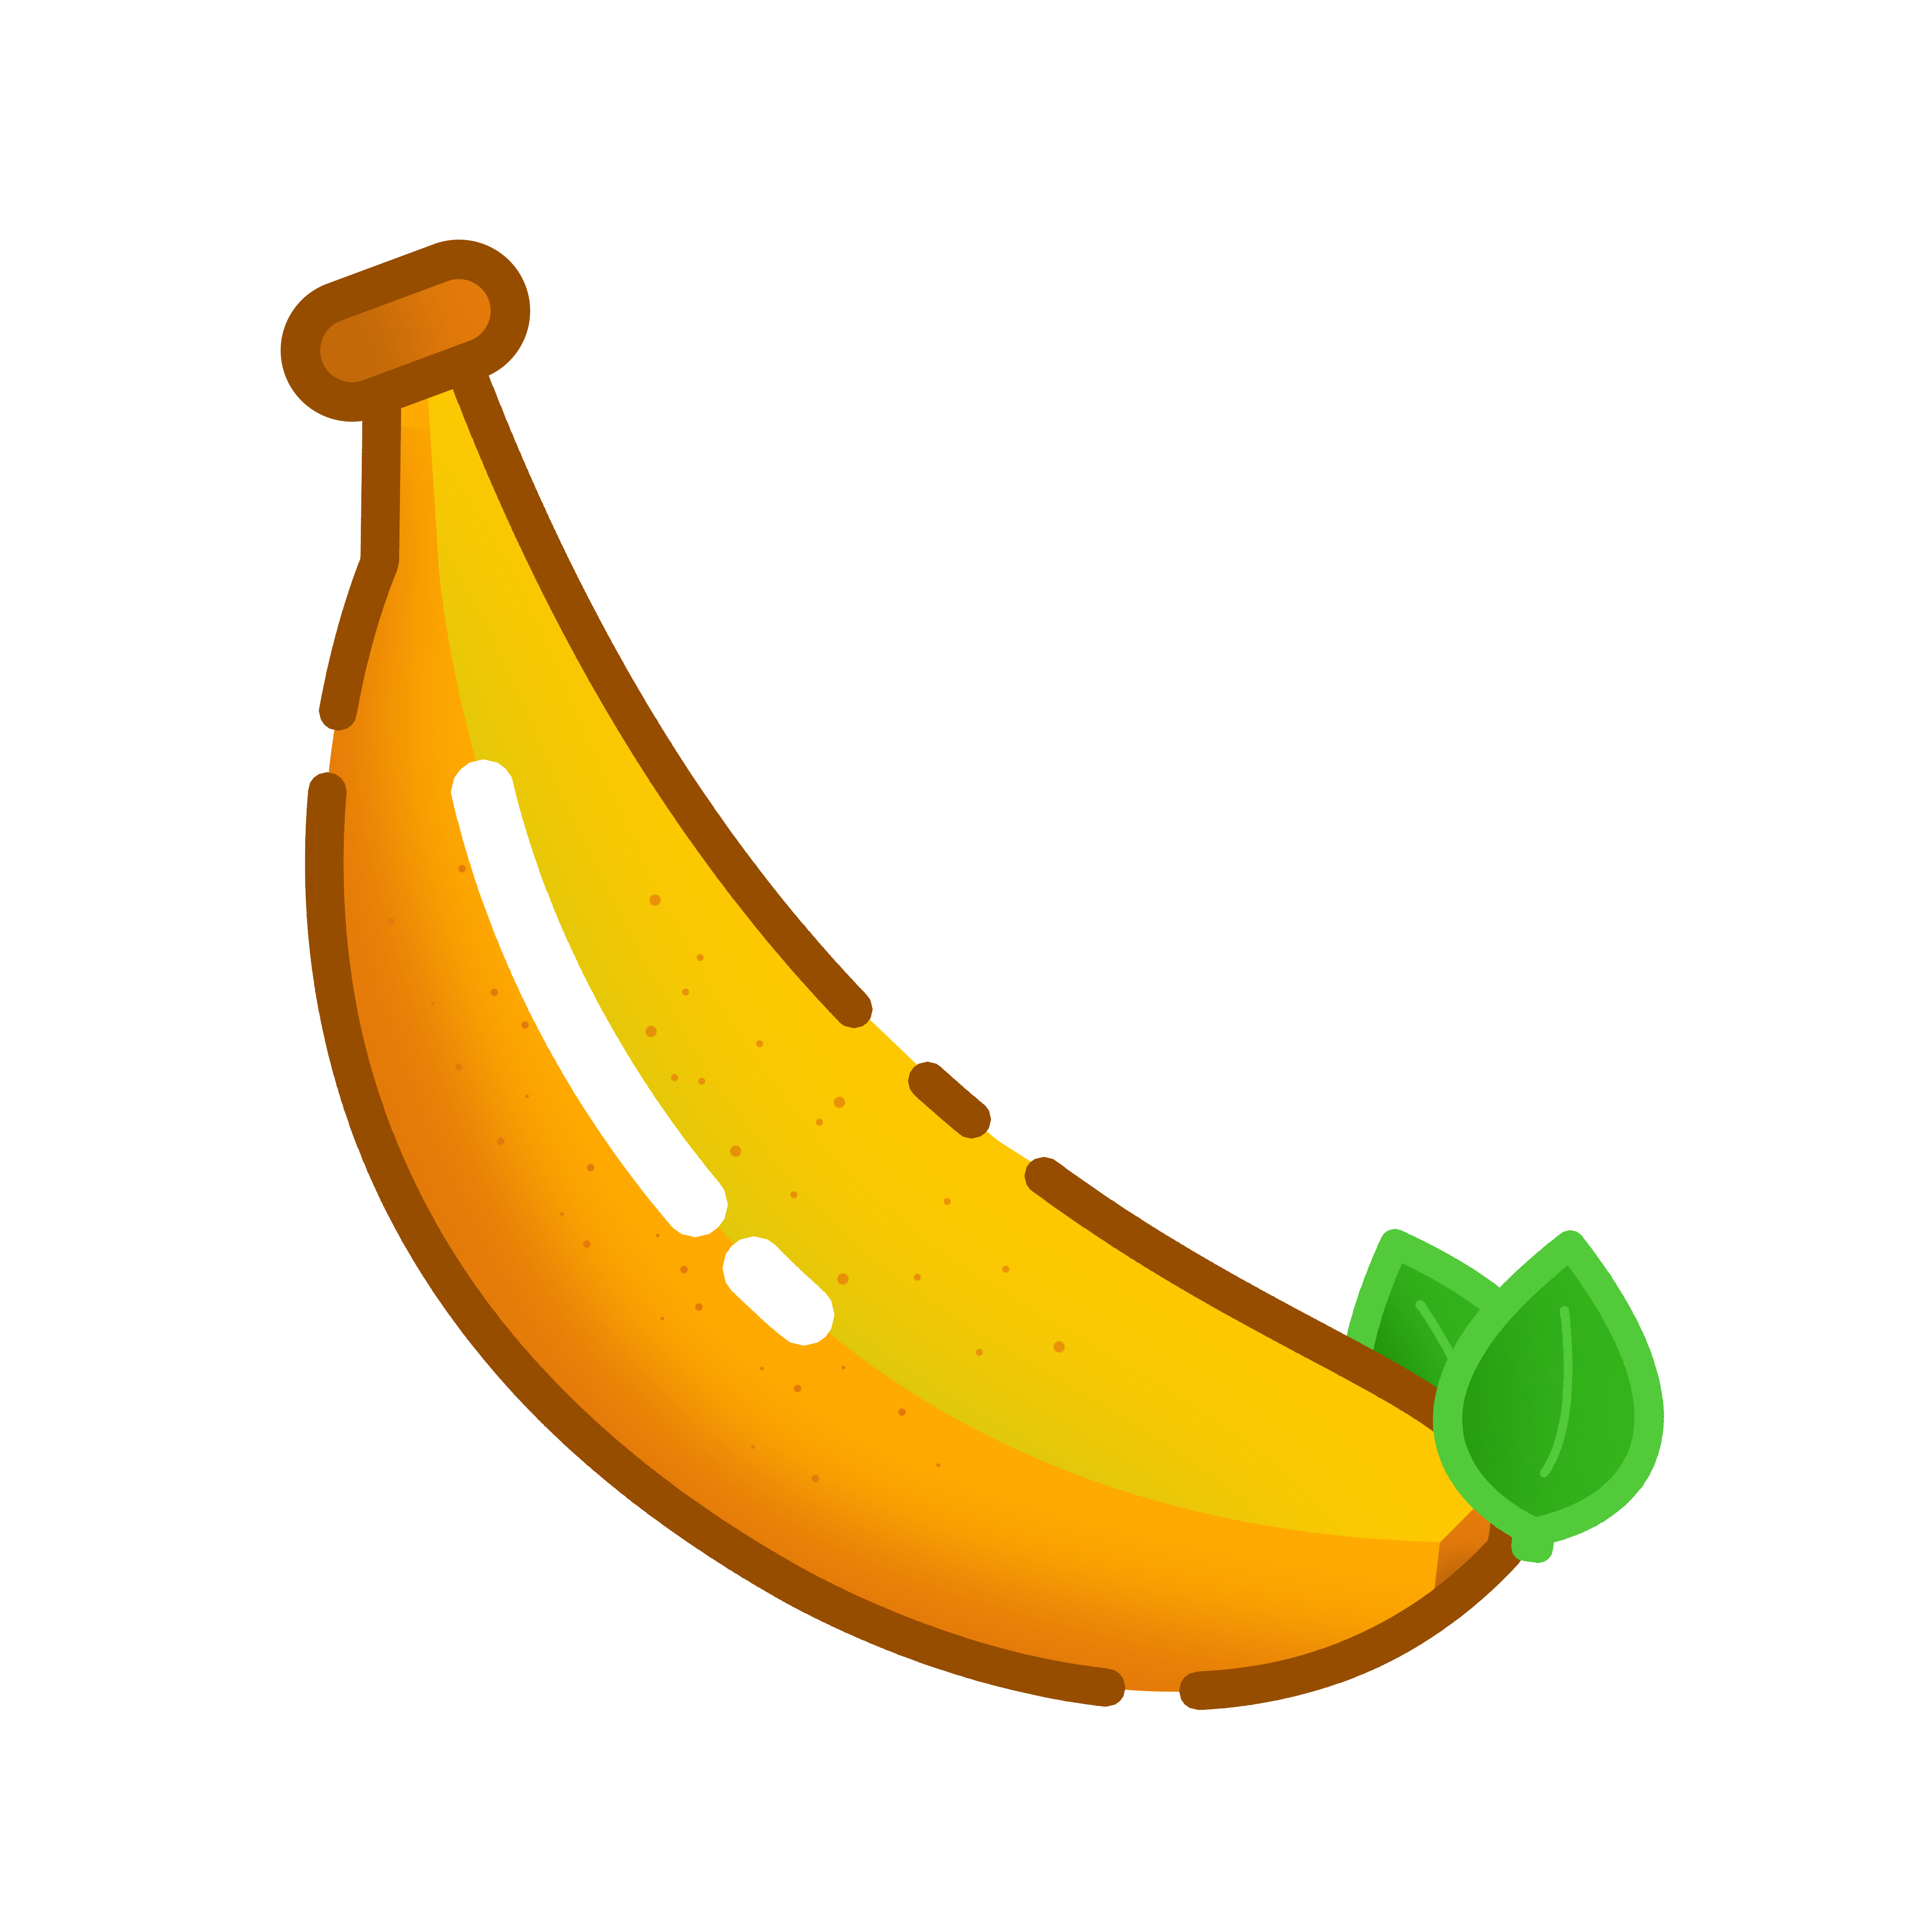 banana_logo.png